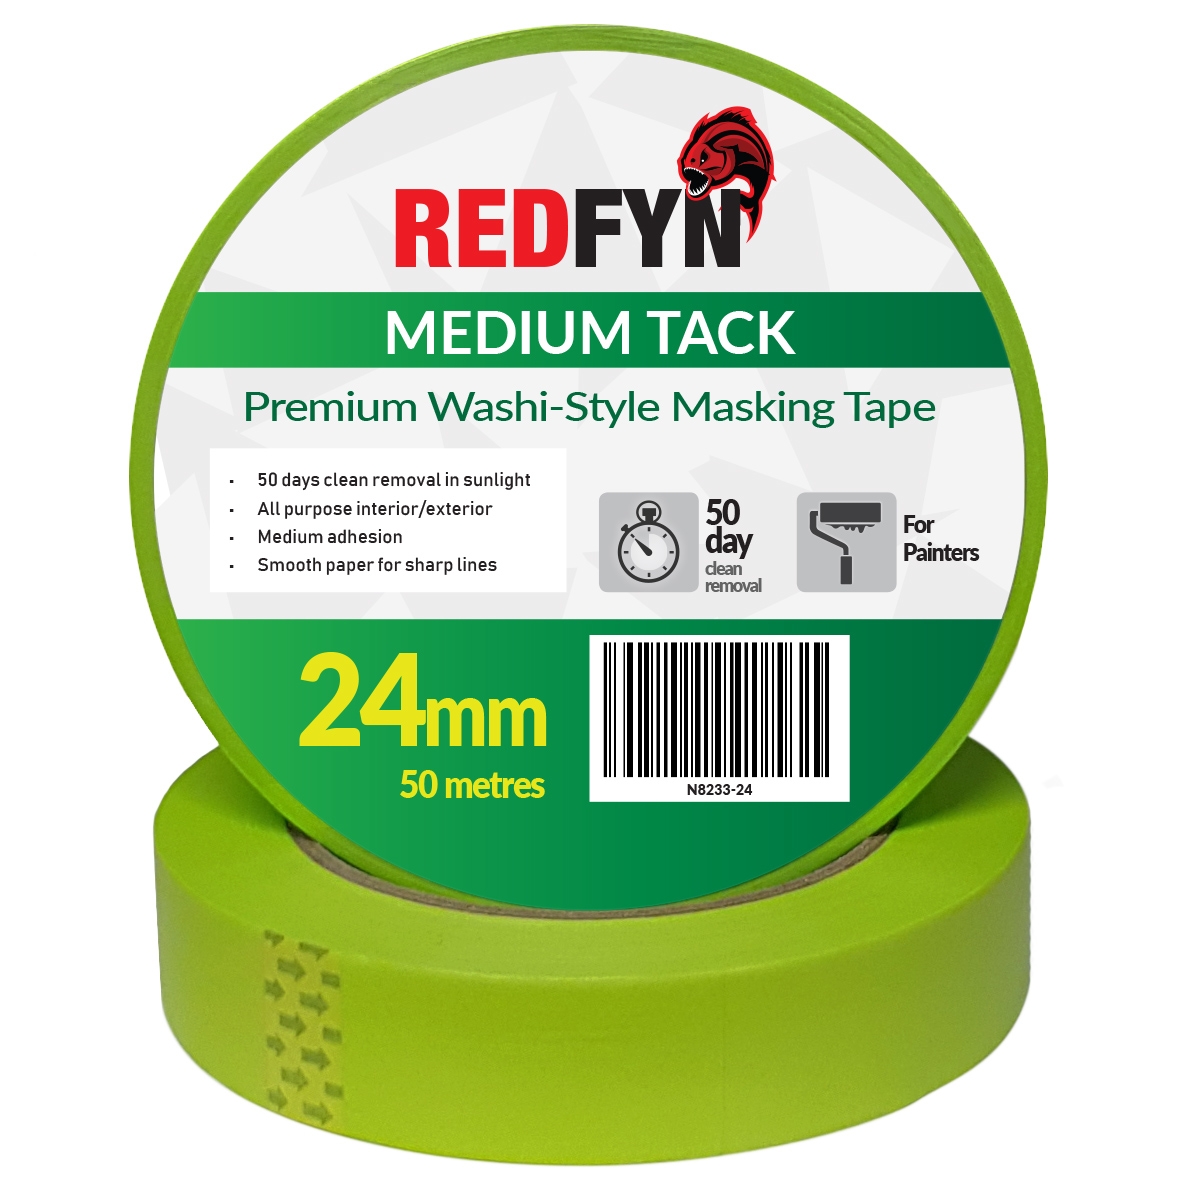 REDFYN Washi-Style Premium Masking Tape